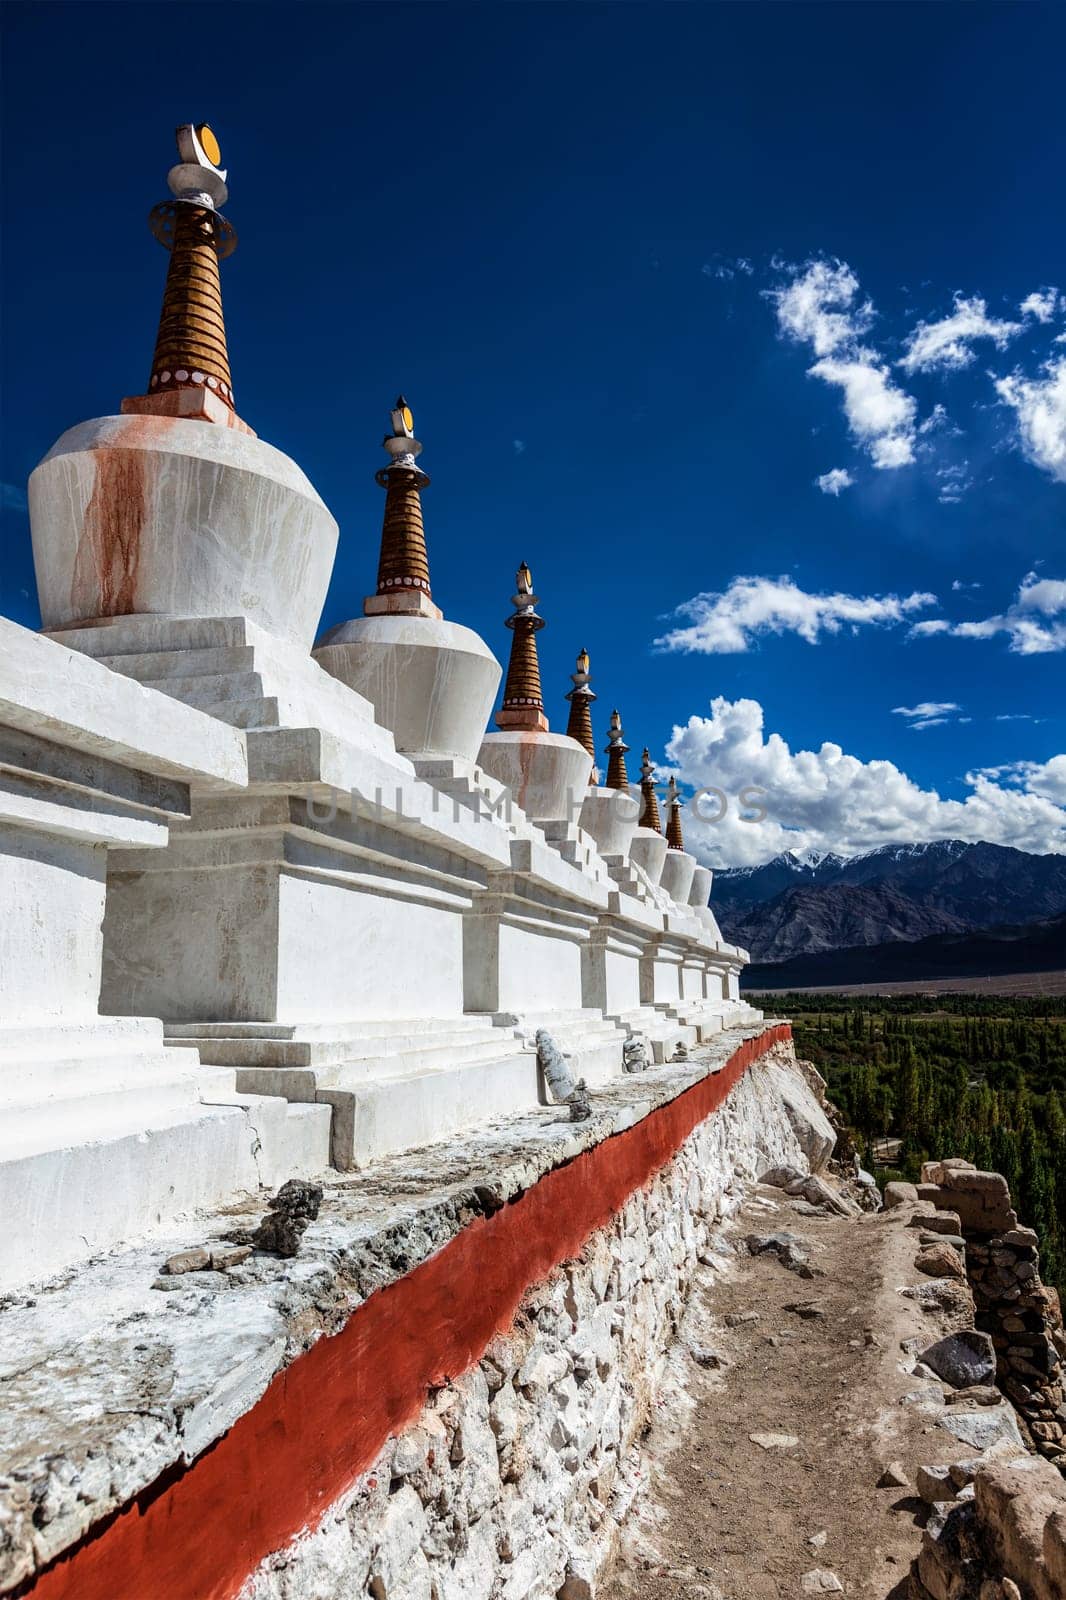 Chortens (Buddhist stupas) outside the Shey palace, Ladakh, India